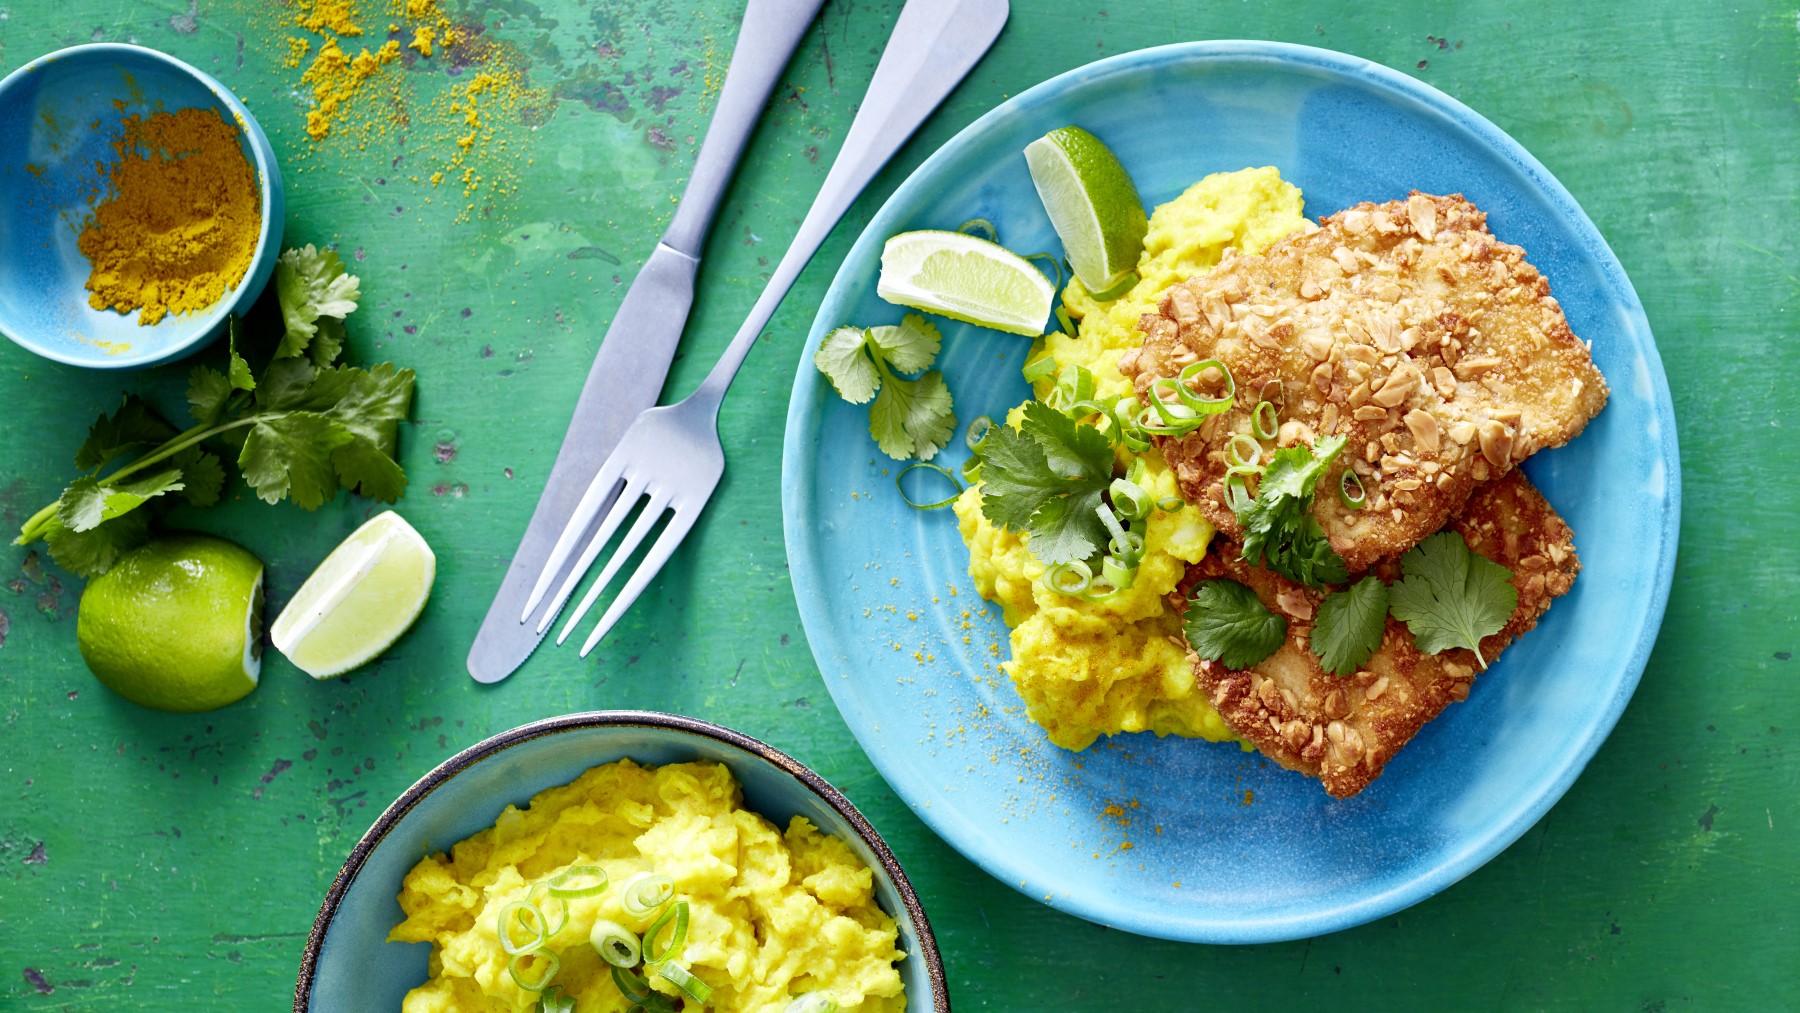 Erdnuss-Schnitzel mit Curry-Stampf auf einem blauen Teller auf grünem Hintergrund. Links davon Messer, Gabel, Curry und Limette. Unten auf dem Bild eine Schüssel mit Kartoffelstampf.